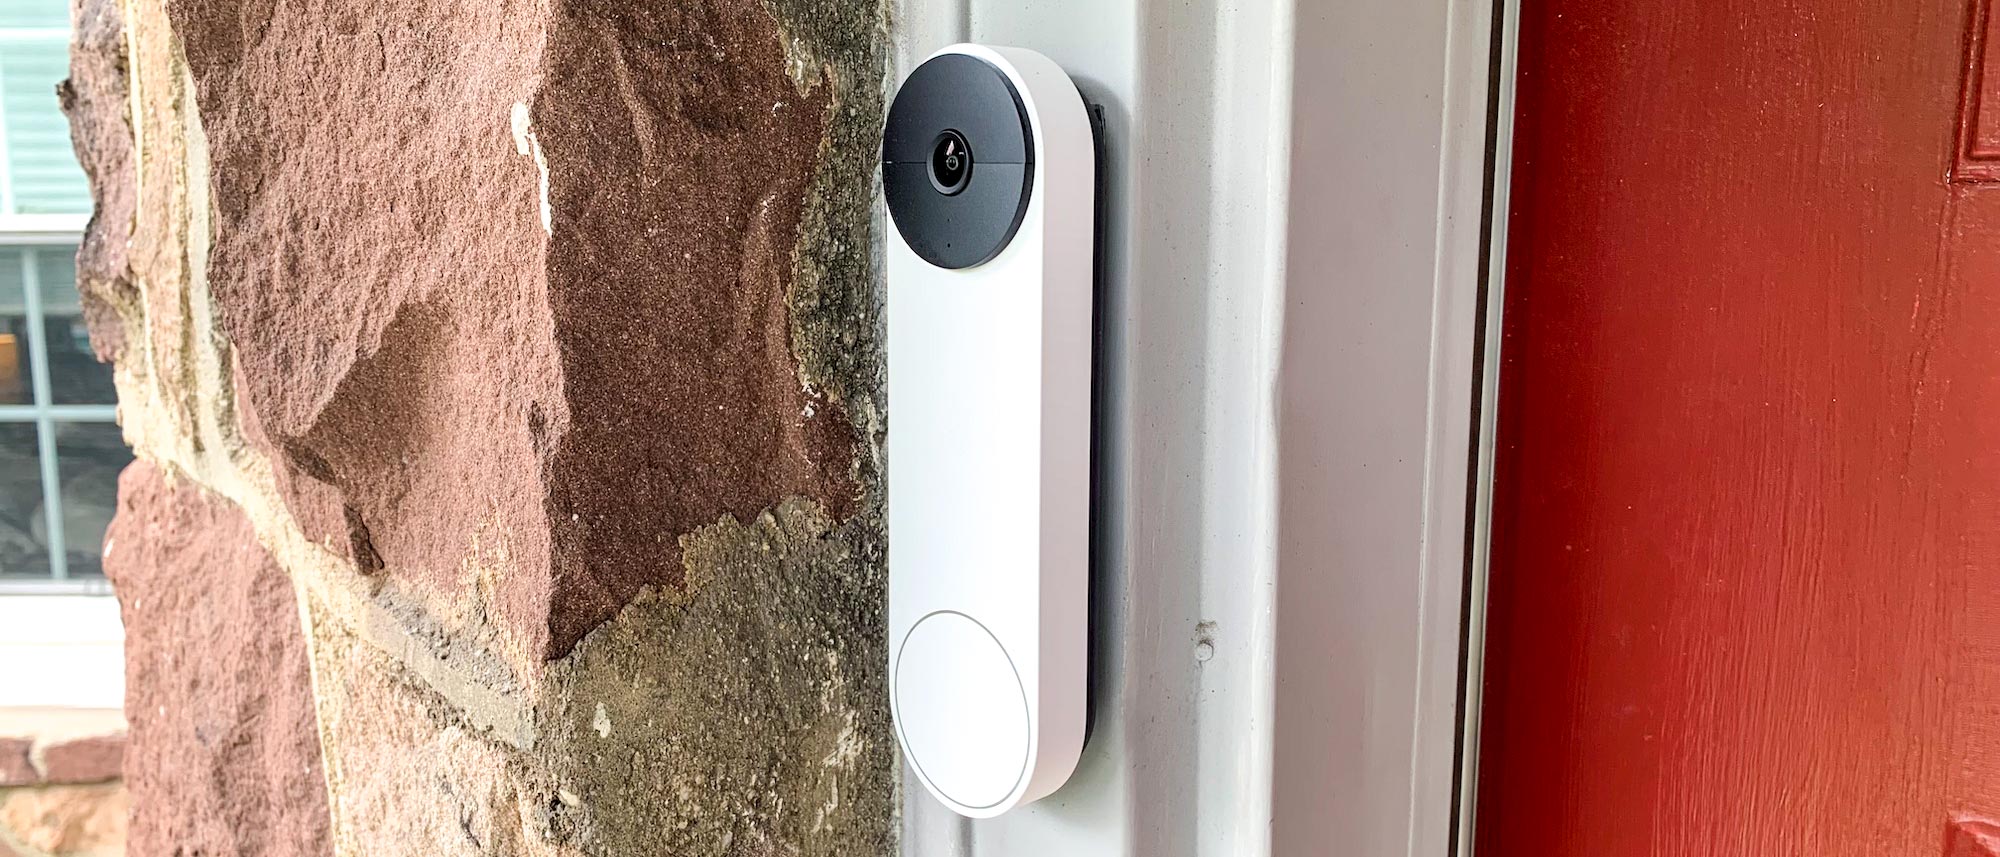 onhandig domesticeren omvang Best video doorbells in 2023: Ring, Nest, Arlo and more tested | Tom's Guide